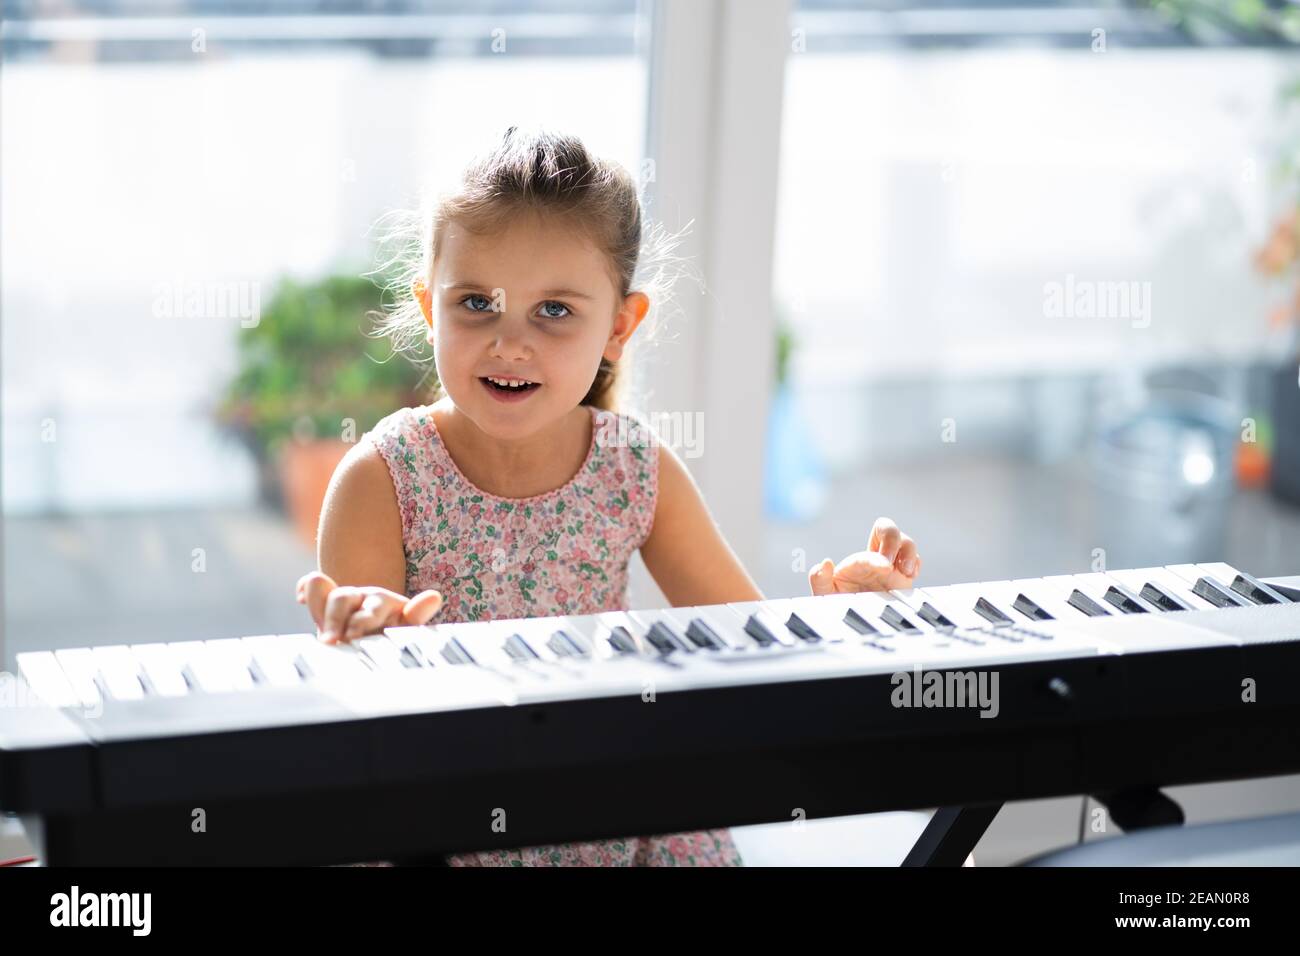 Child Girl Playing Music Keyboard Piano Stock Photo